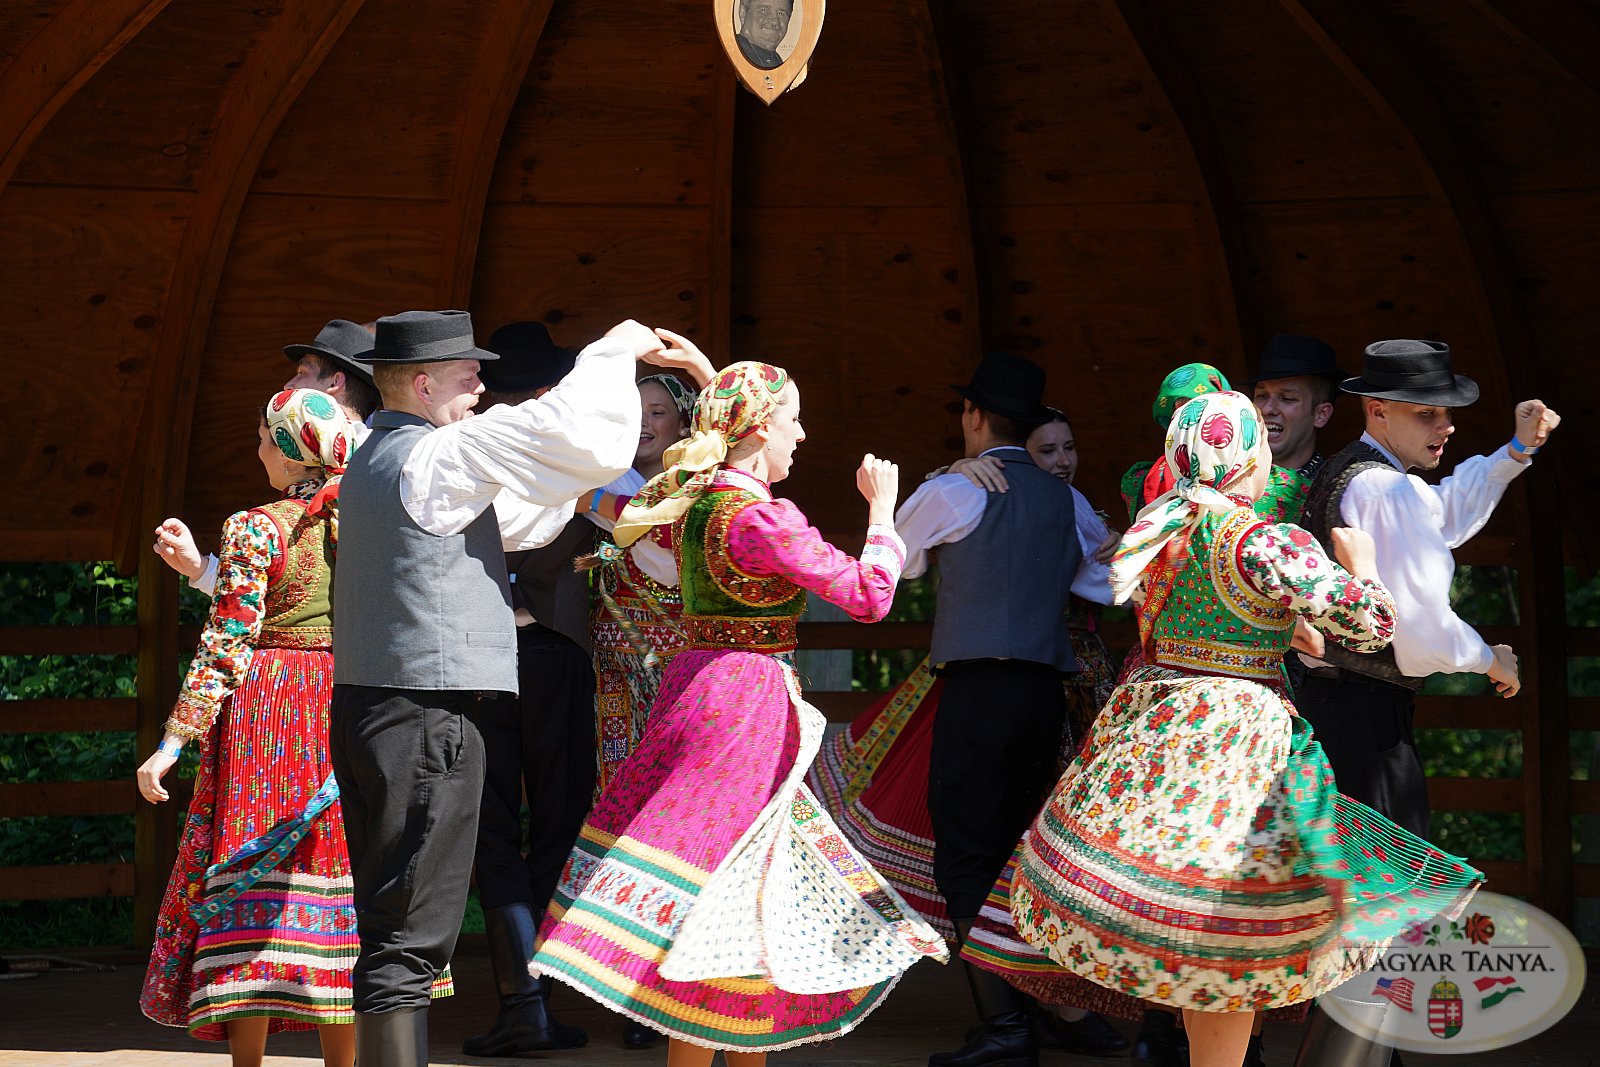 Kecskemet Folk Dance Ensemble